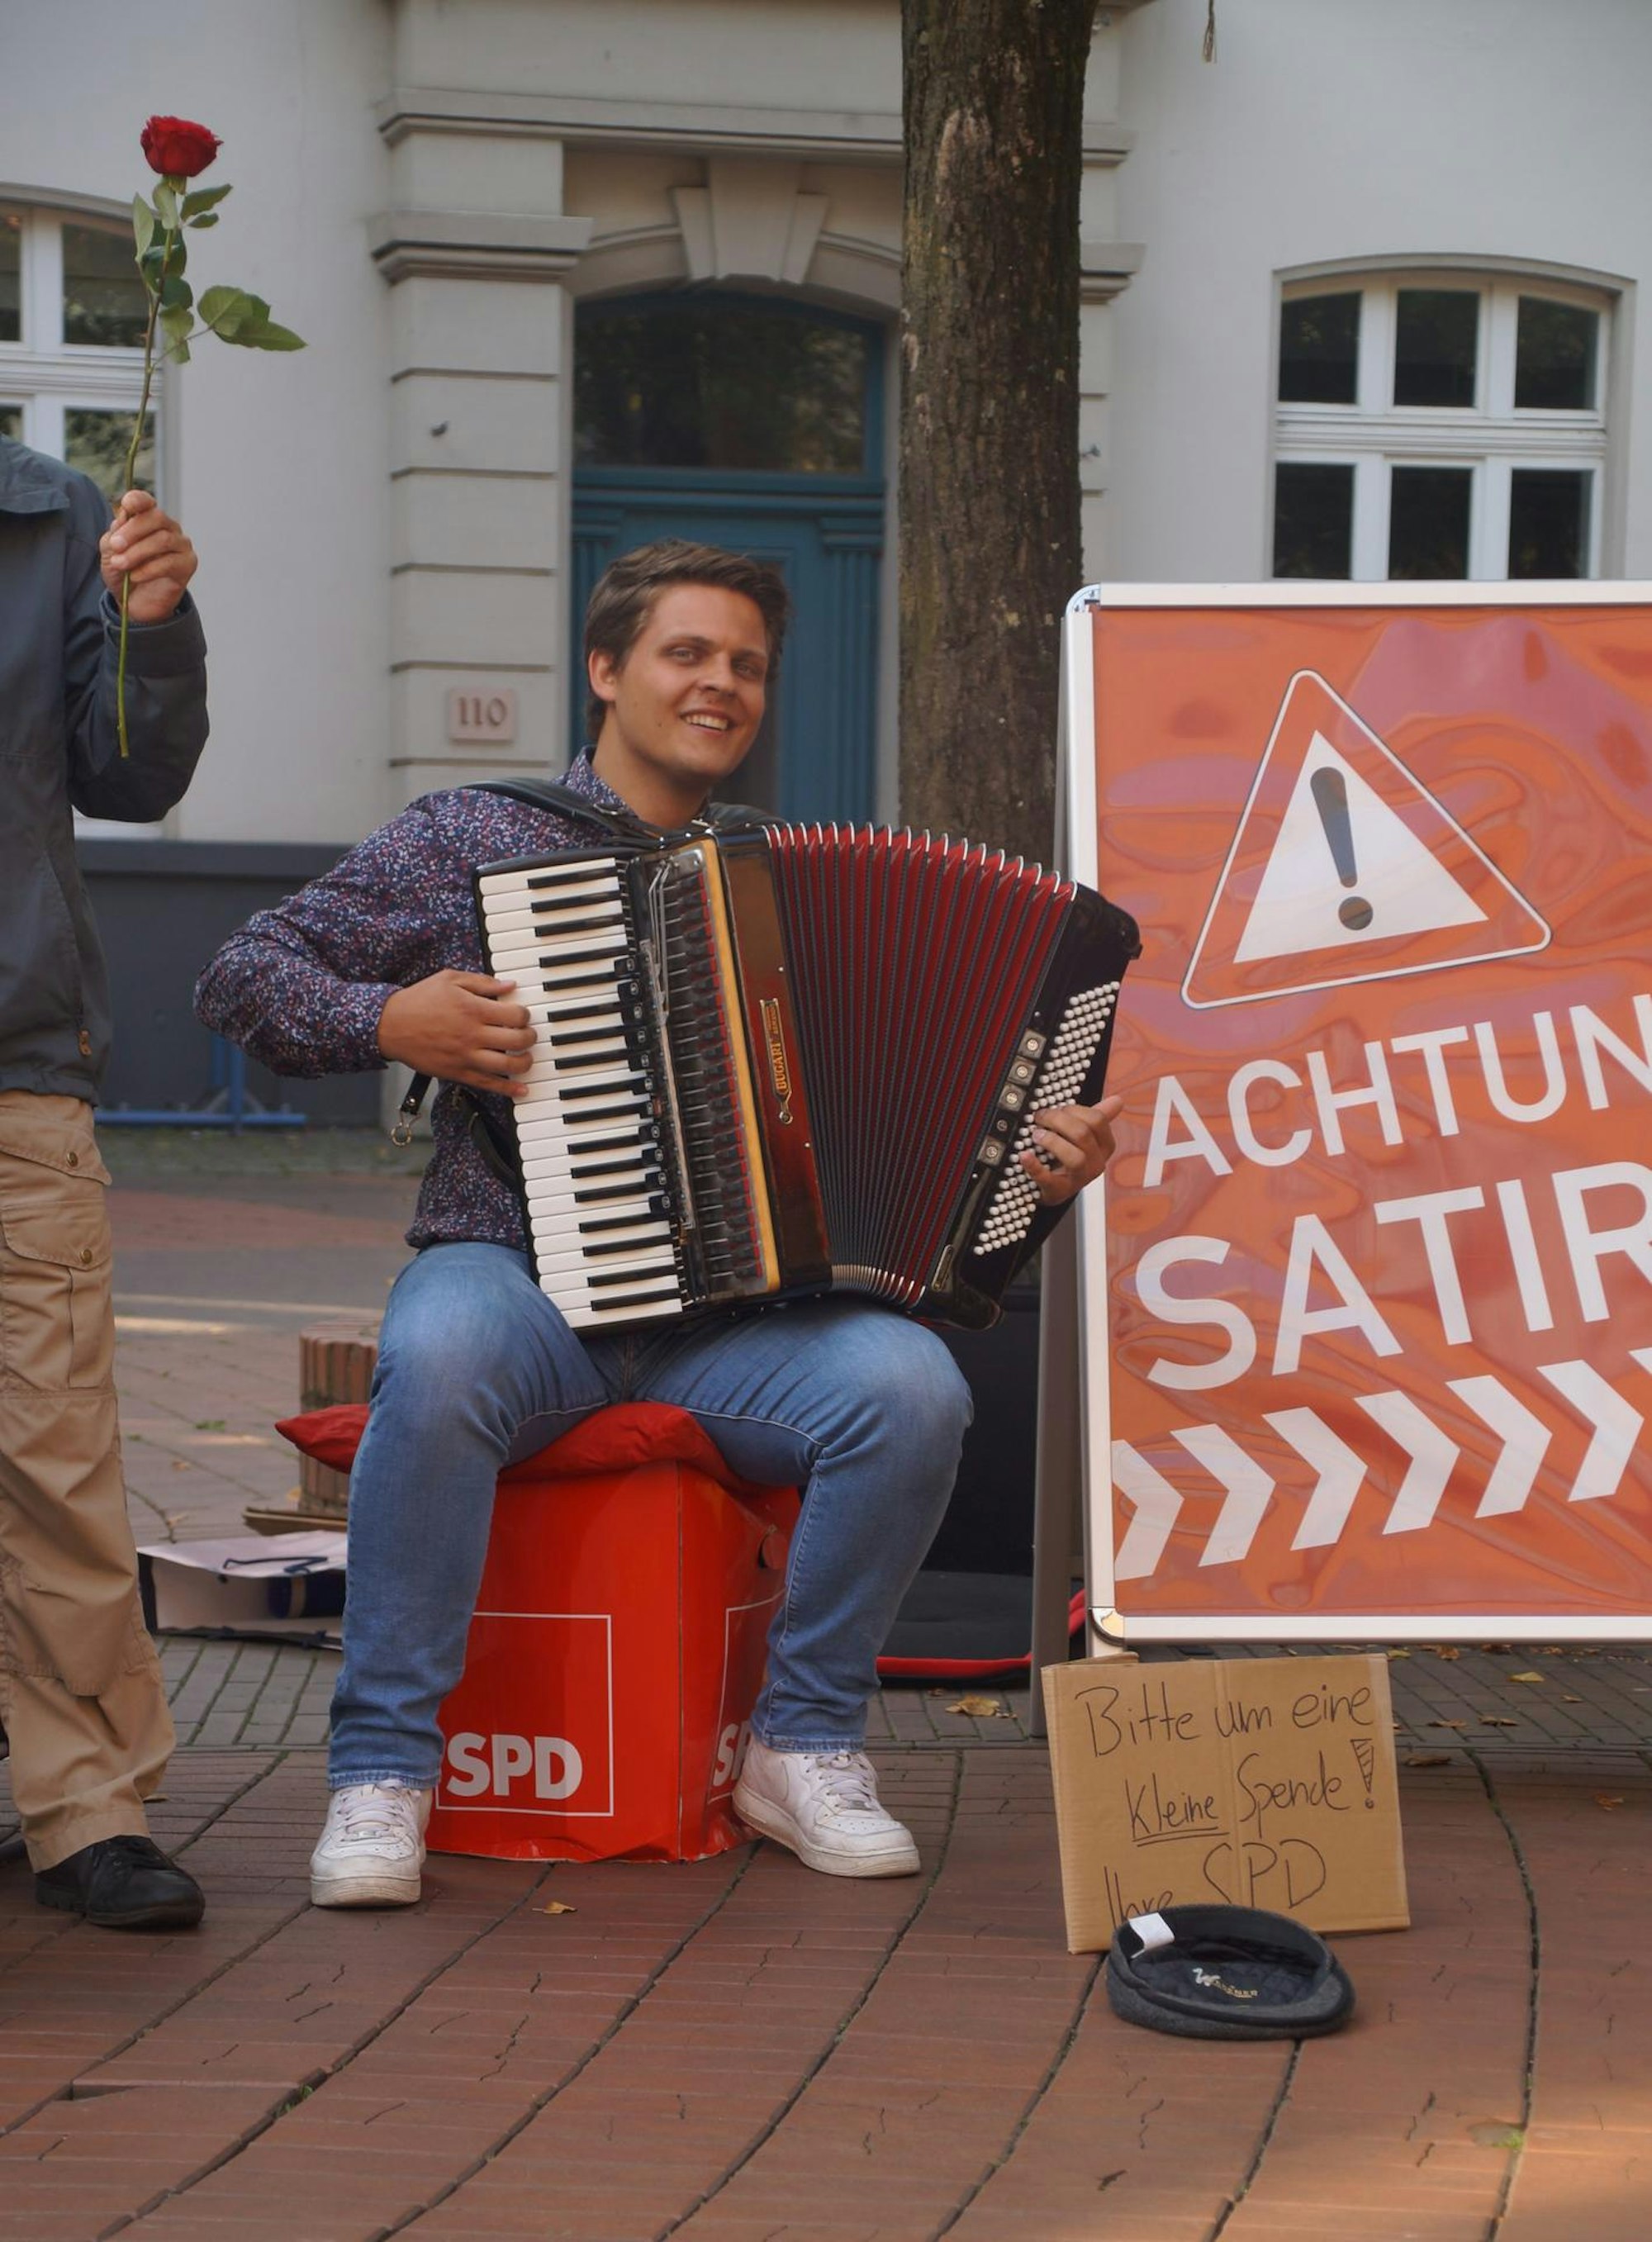 Aaron Spielmanns (SPD) setzt sich mit Akkordeon satirisch mit Parteispenden auseinander.